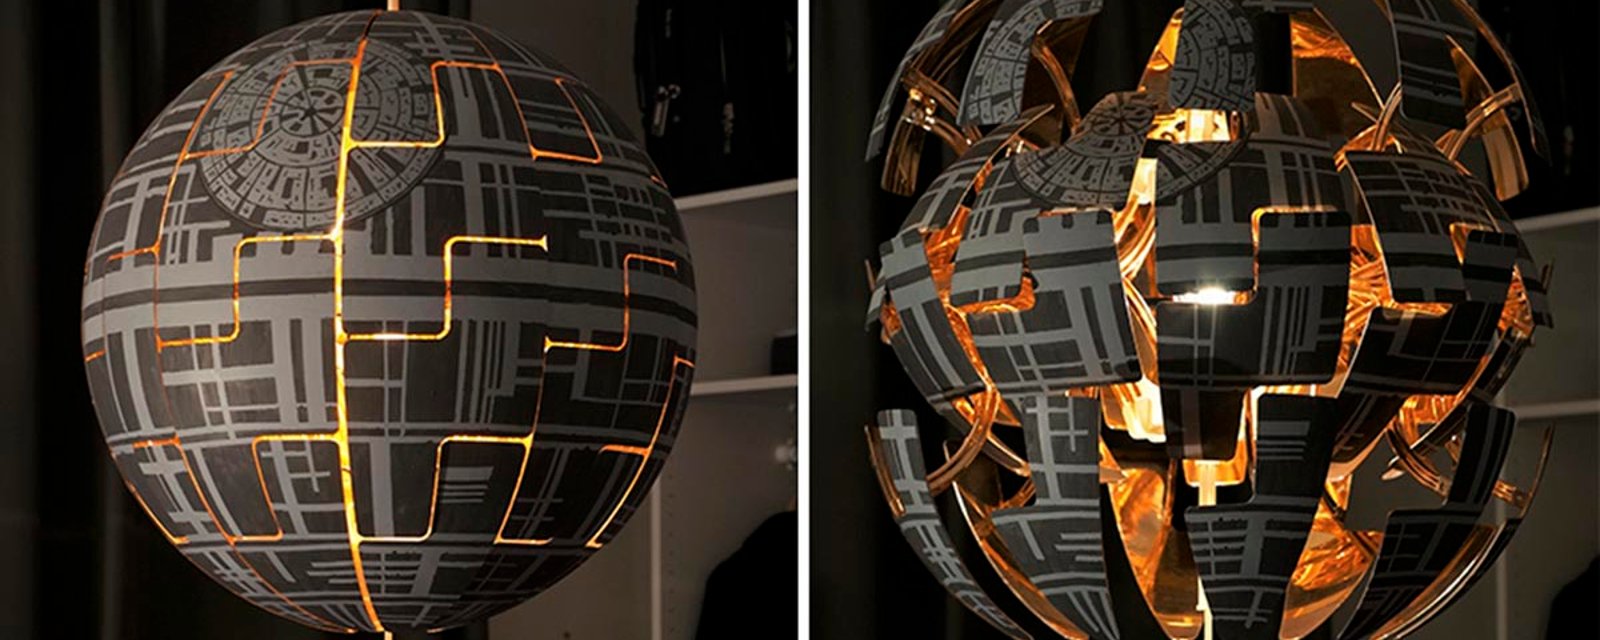 Pour les fans de Star Wars, transformez une lampe Ikea en Étoile de la mort